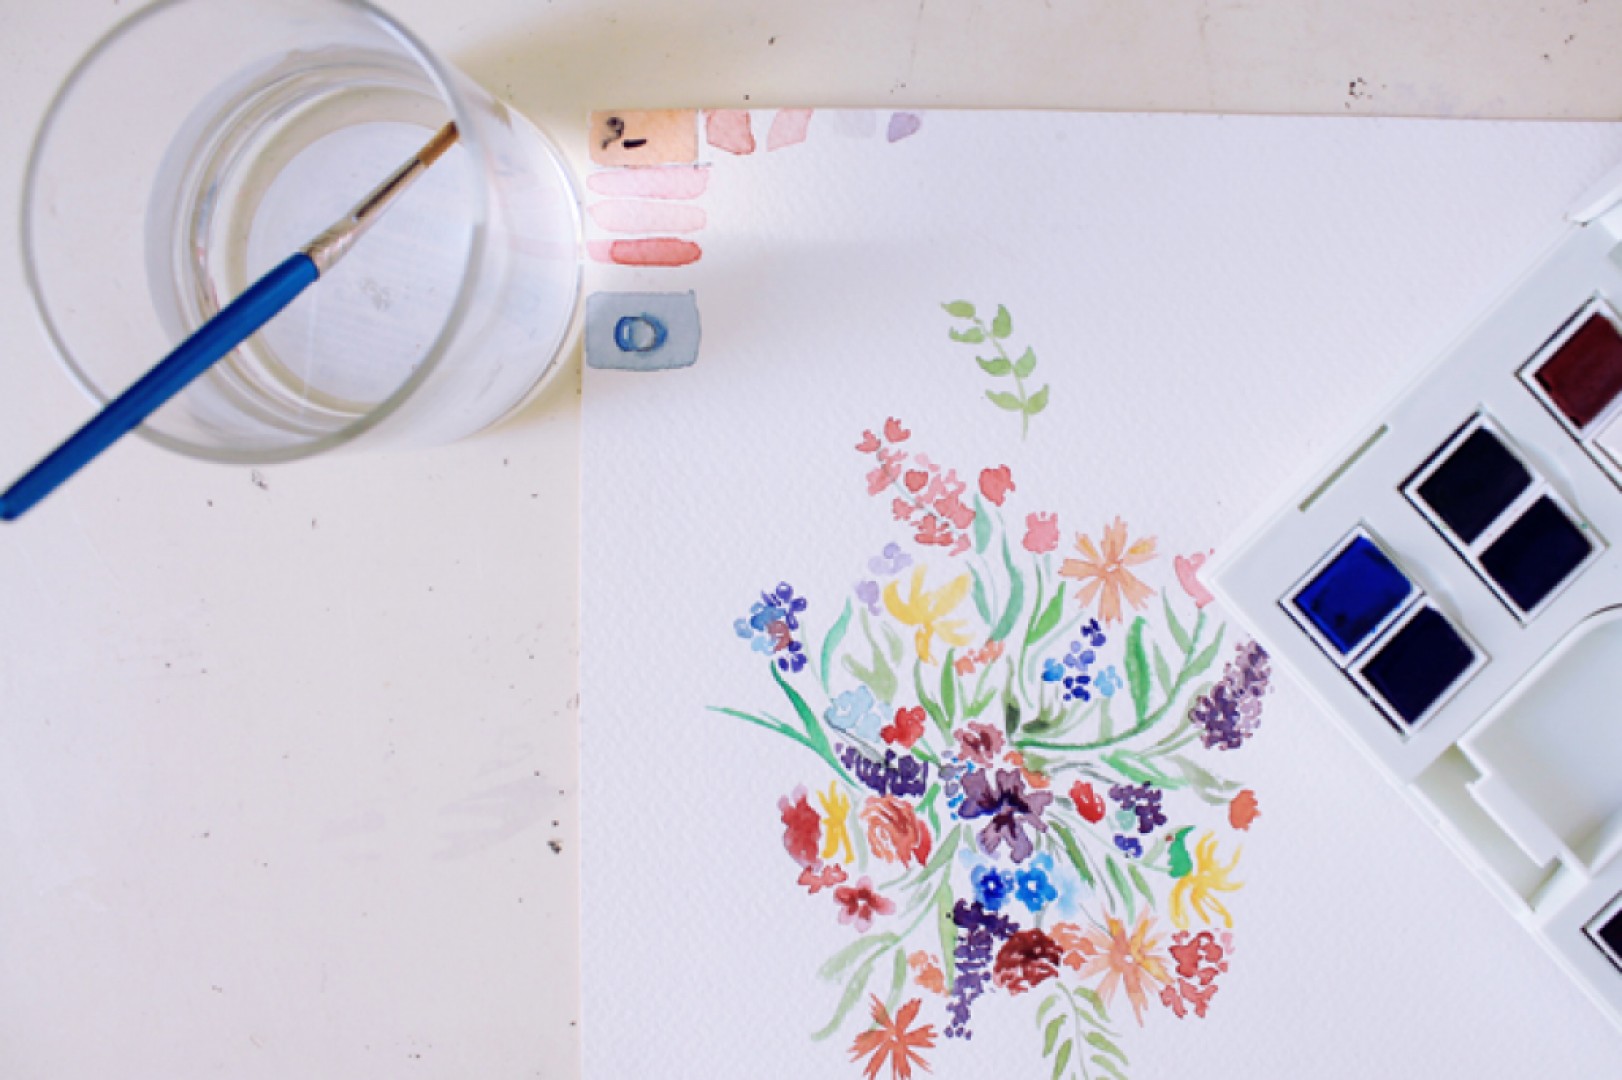 Blog Da Li Je Moguće Slikati Na Platnu Sa Akvarel Bojama